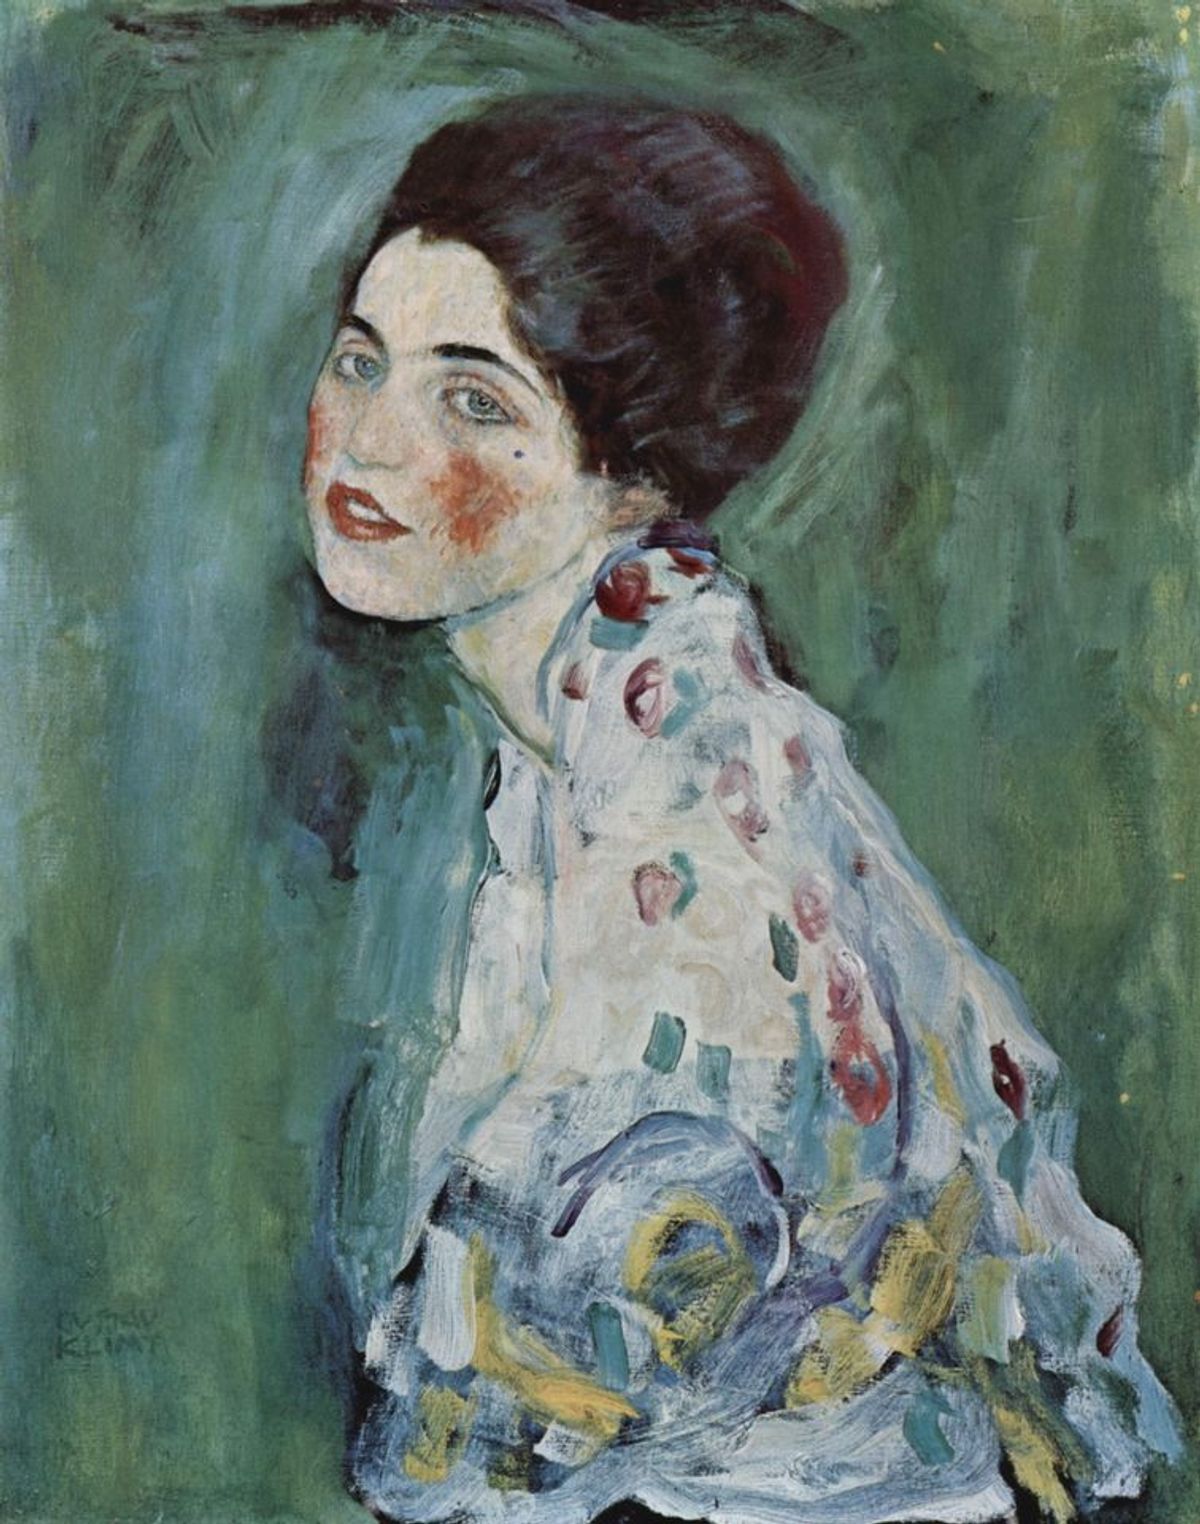 Gustav Klimt's Portrait of a Lady (1916-17) was stolen from the Ricci Oddi Gallery of Modern Art in 1997 